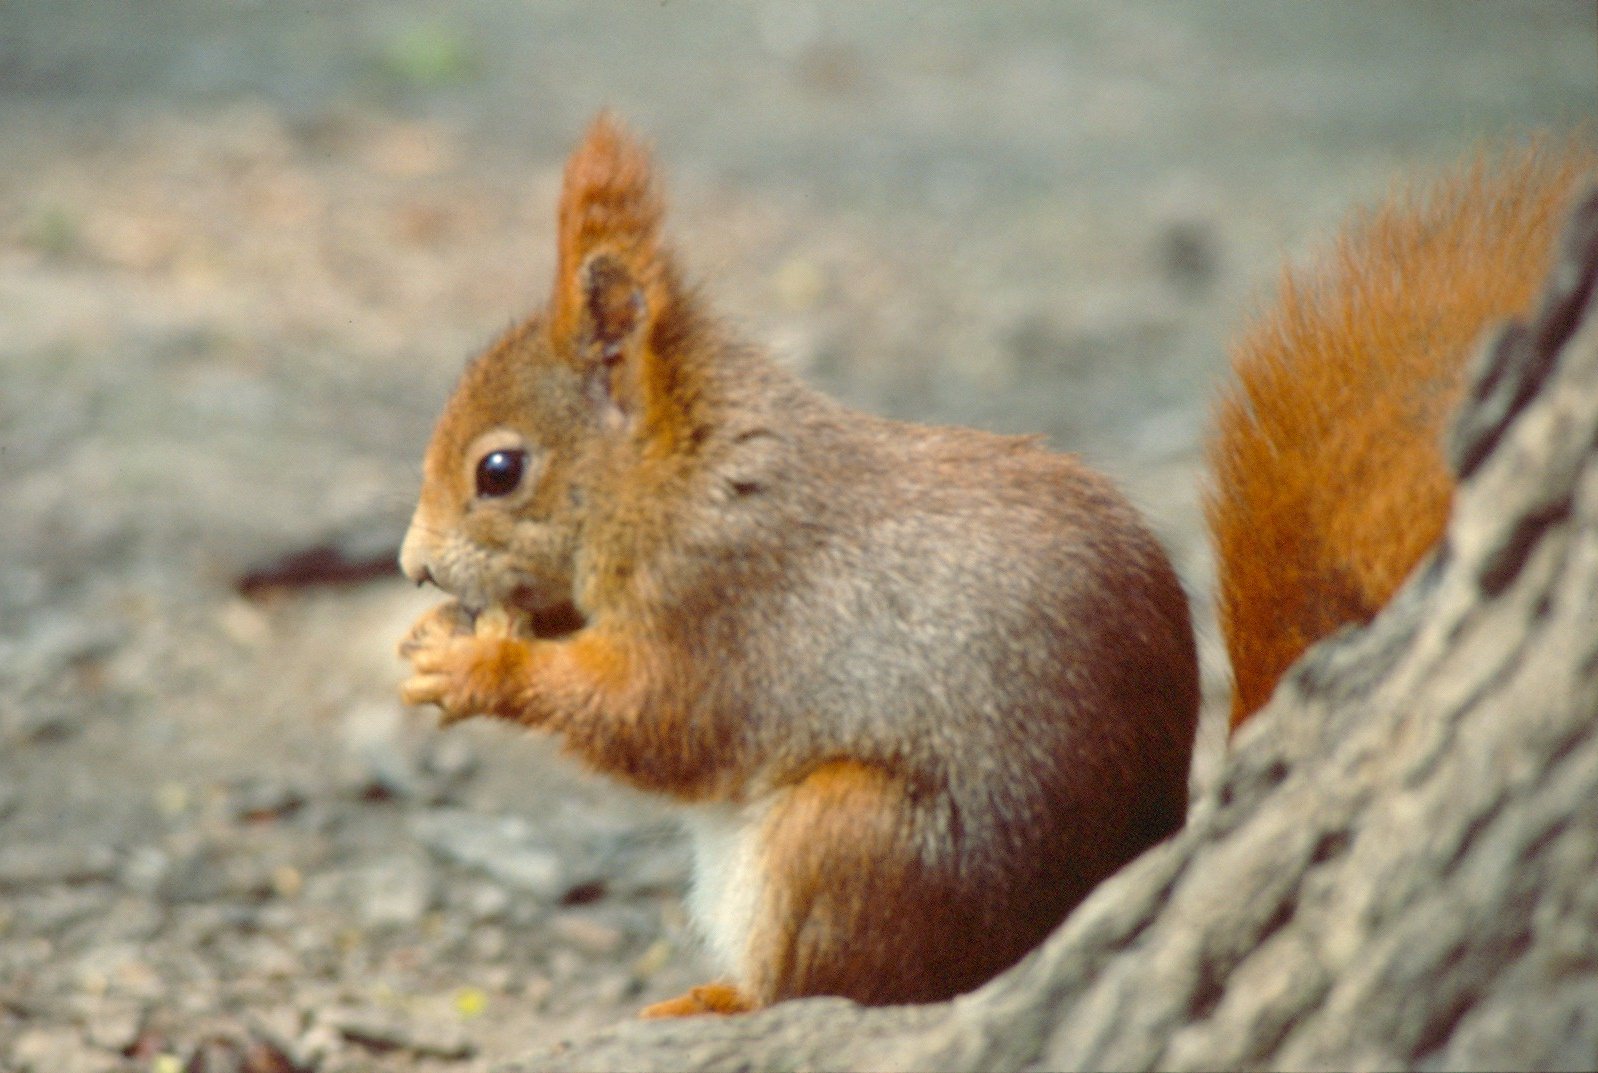 Regno Unito, scatta l’allarme lebbra: colpa degli scoiattoli infetti